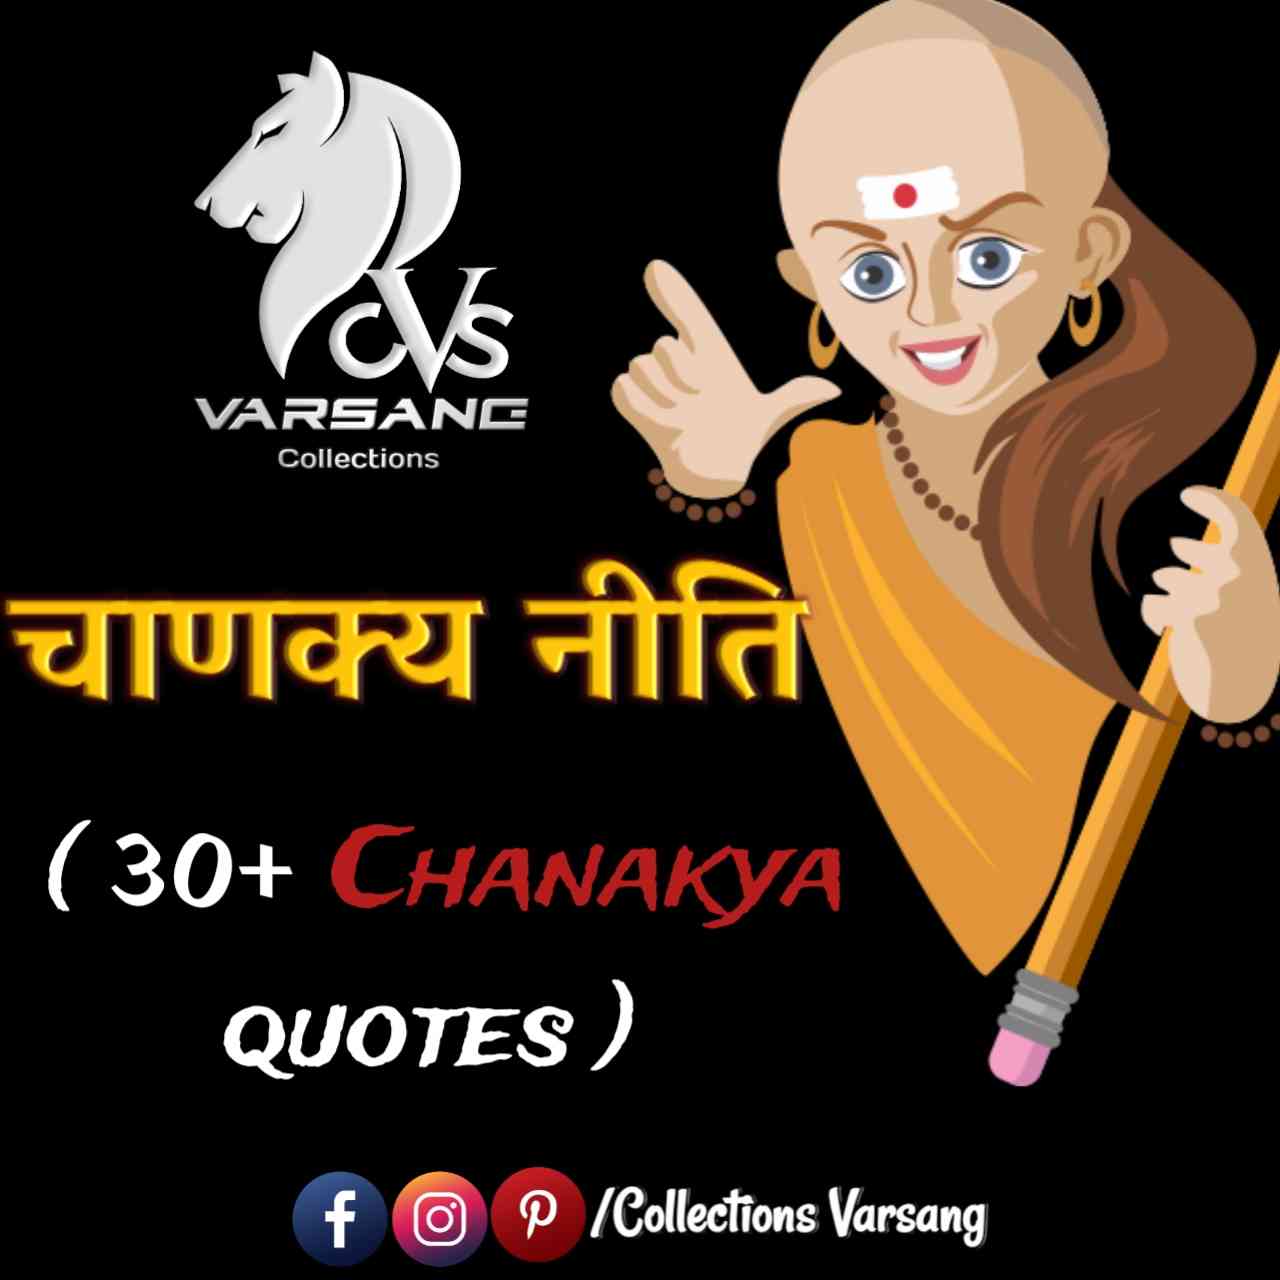 chanakya quotes in hindi - (collections varsang)